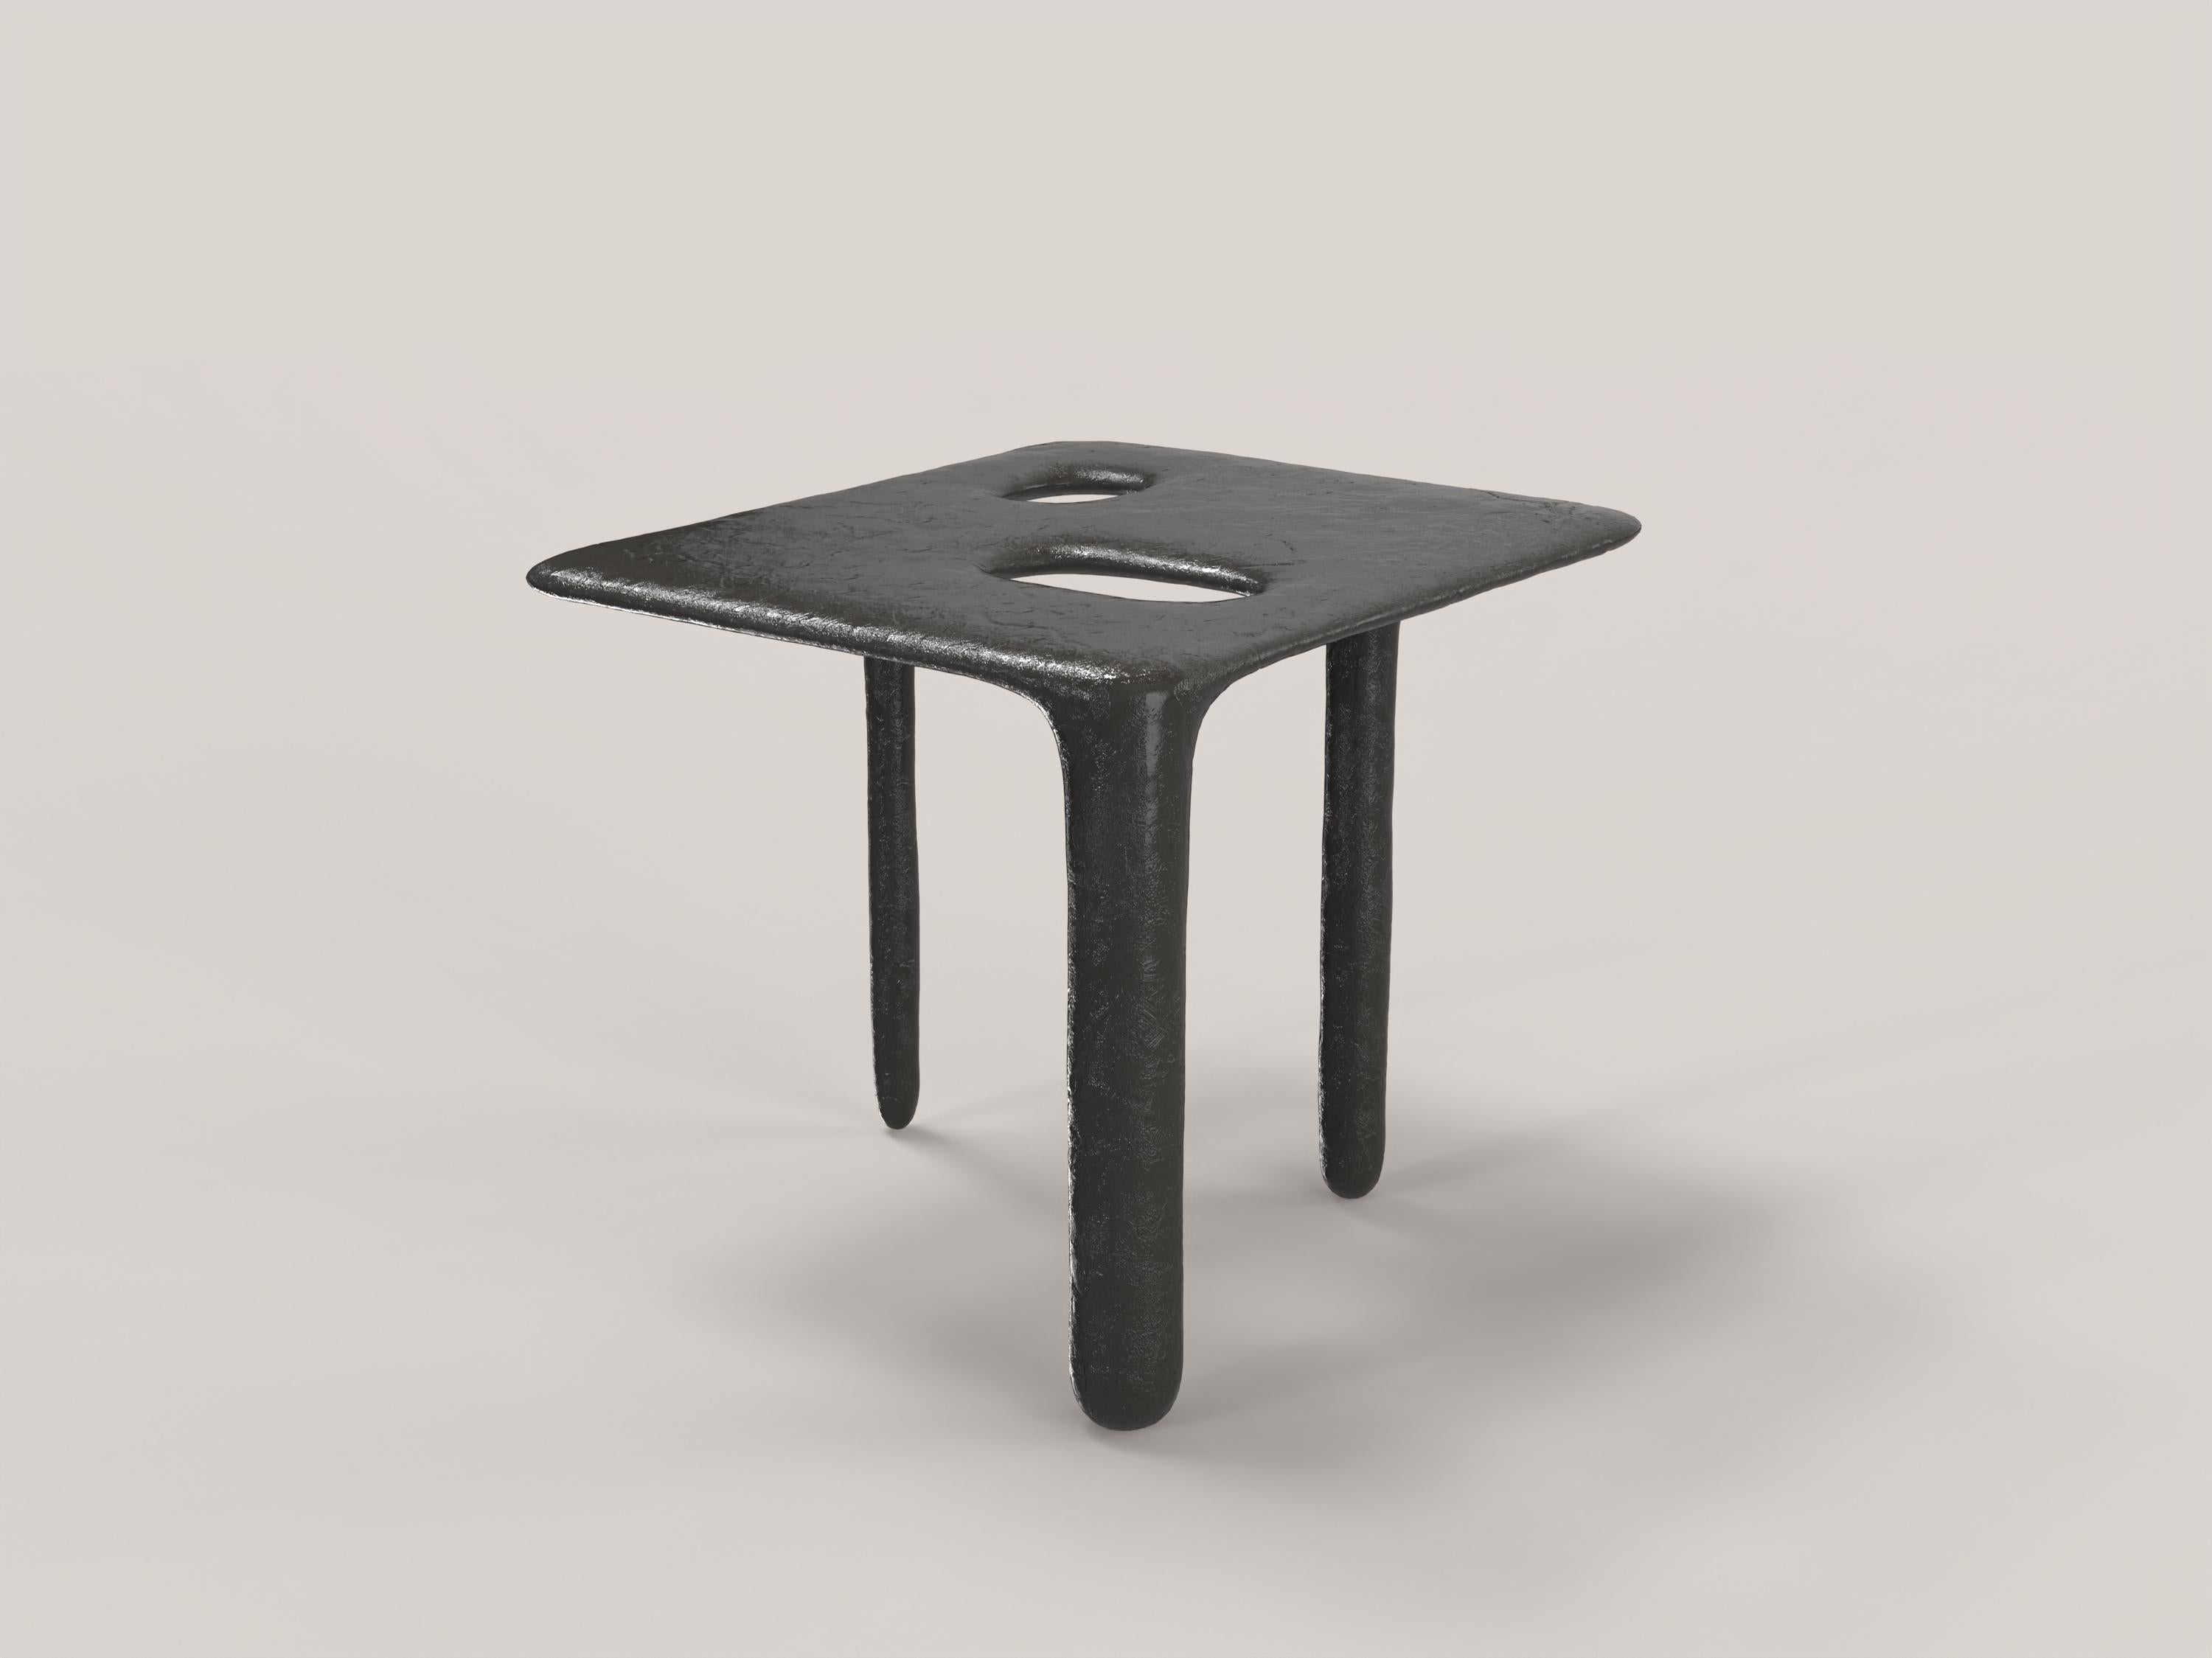 Italian Limited Edition Bronze Table, Oasi V1 by Edizione Limitata For Sale